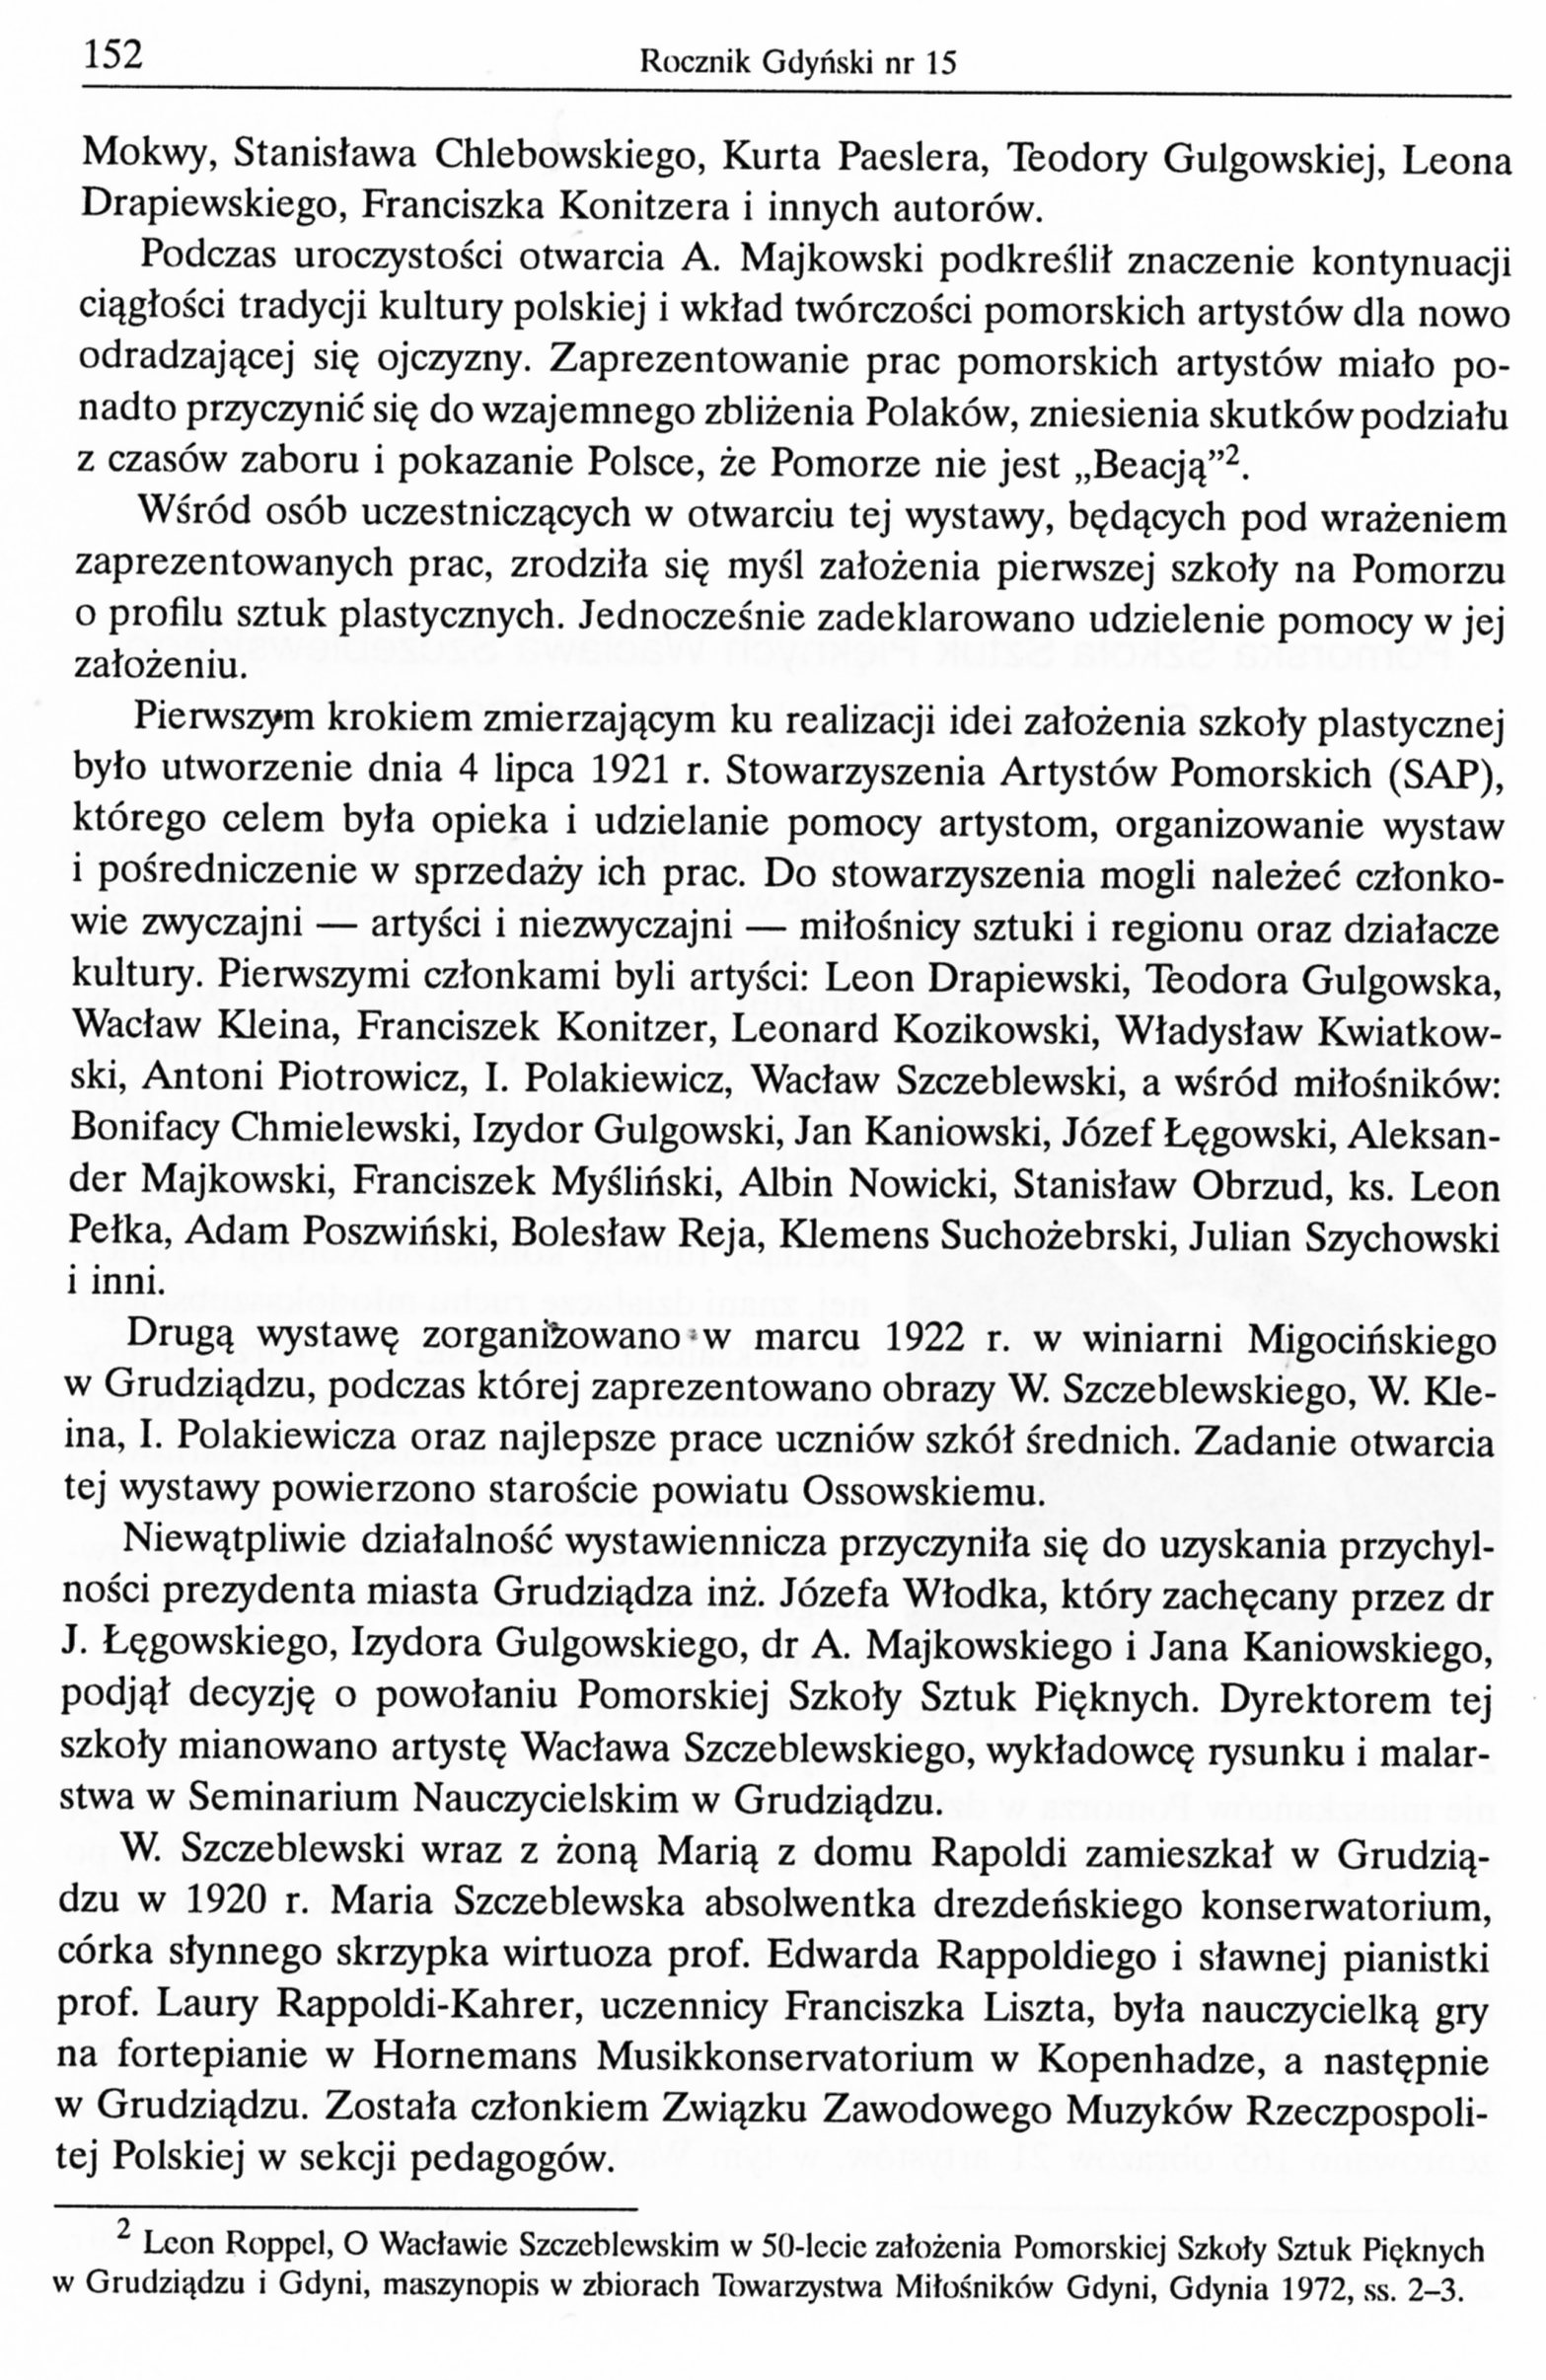 Pomorska Szkoła Sztuk Pięknych W. Szczeblewskiego w Grudziądzu i Gdyni w latach 1922-1939